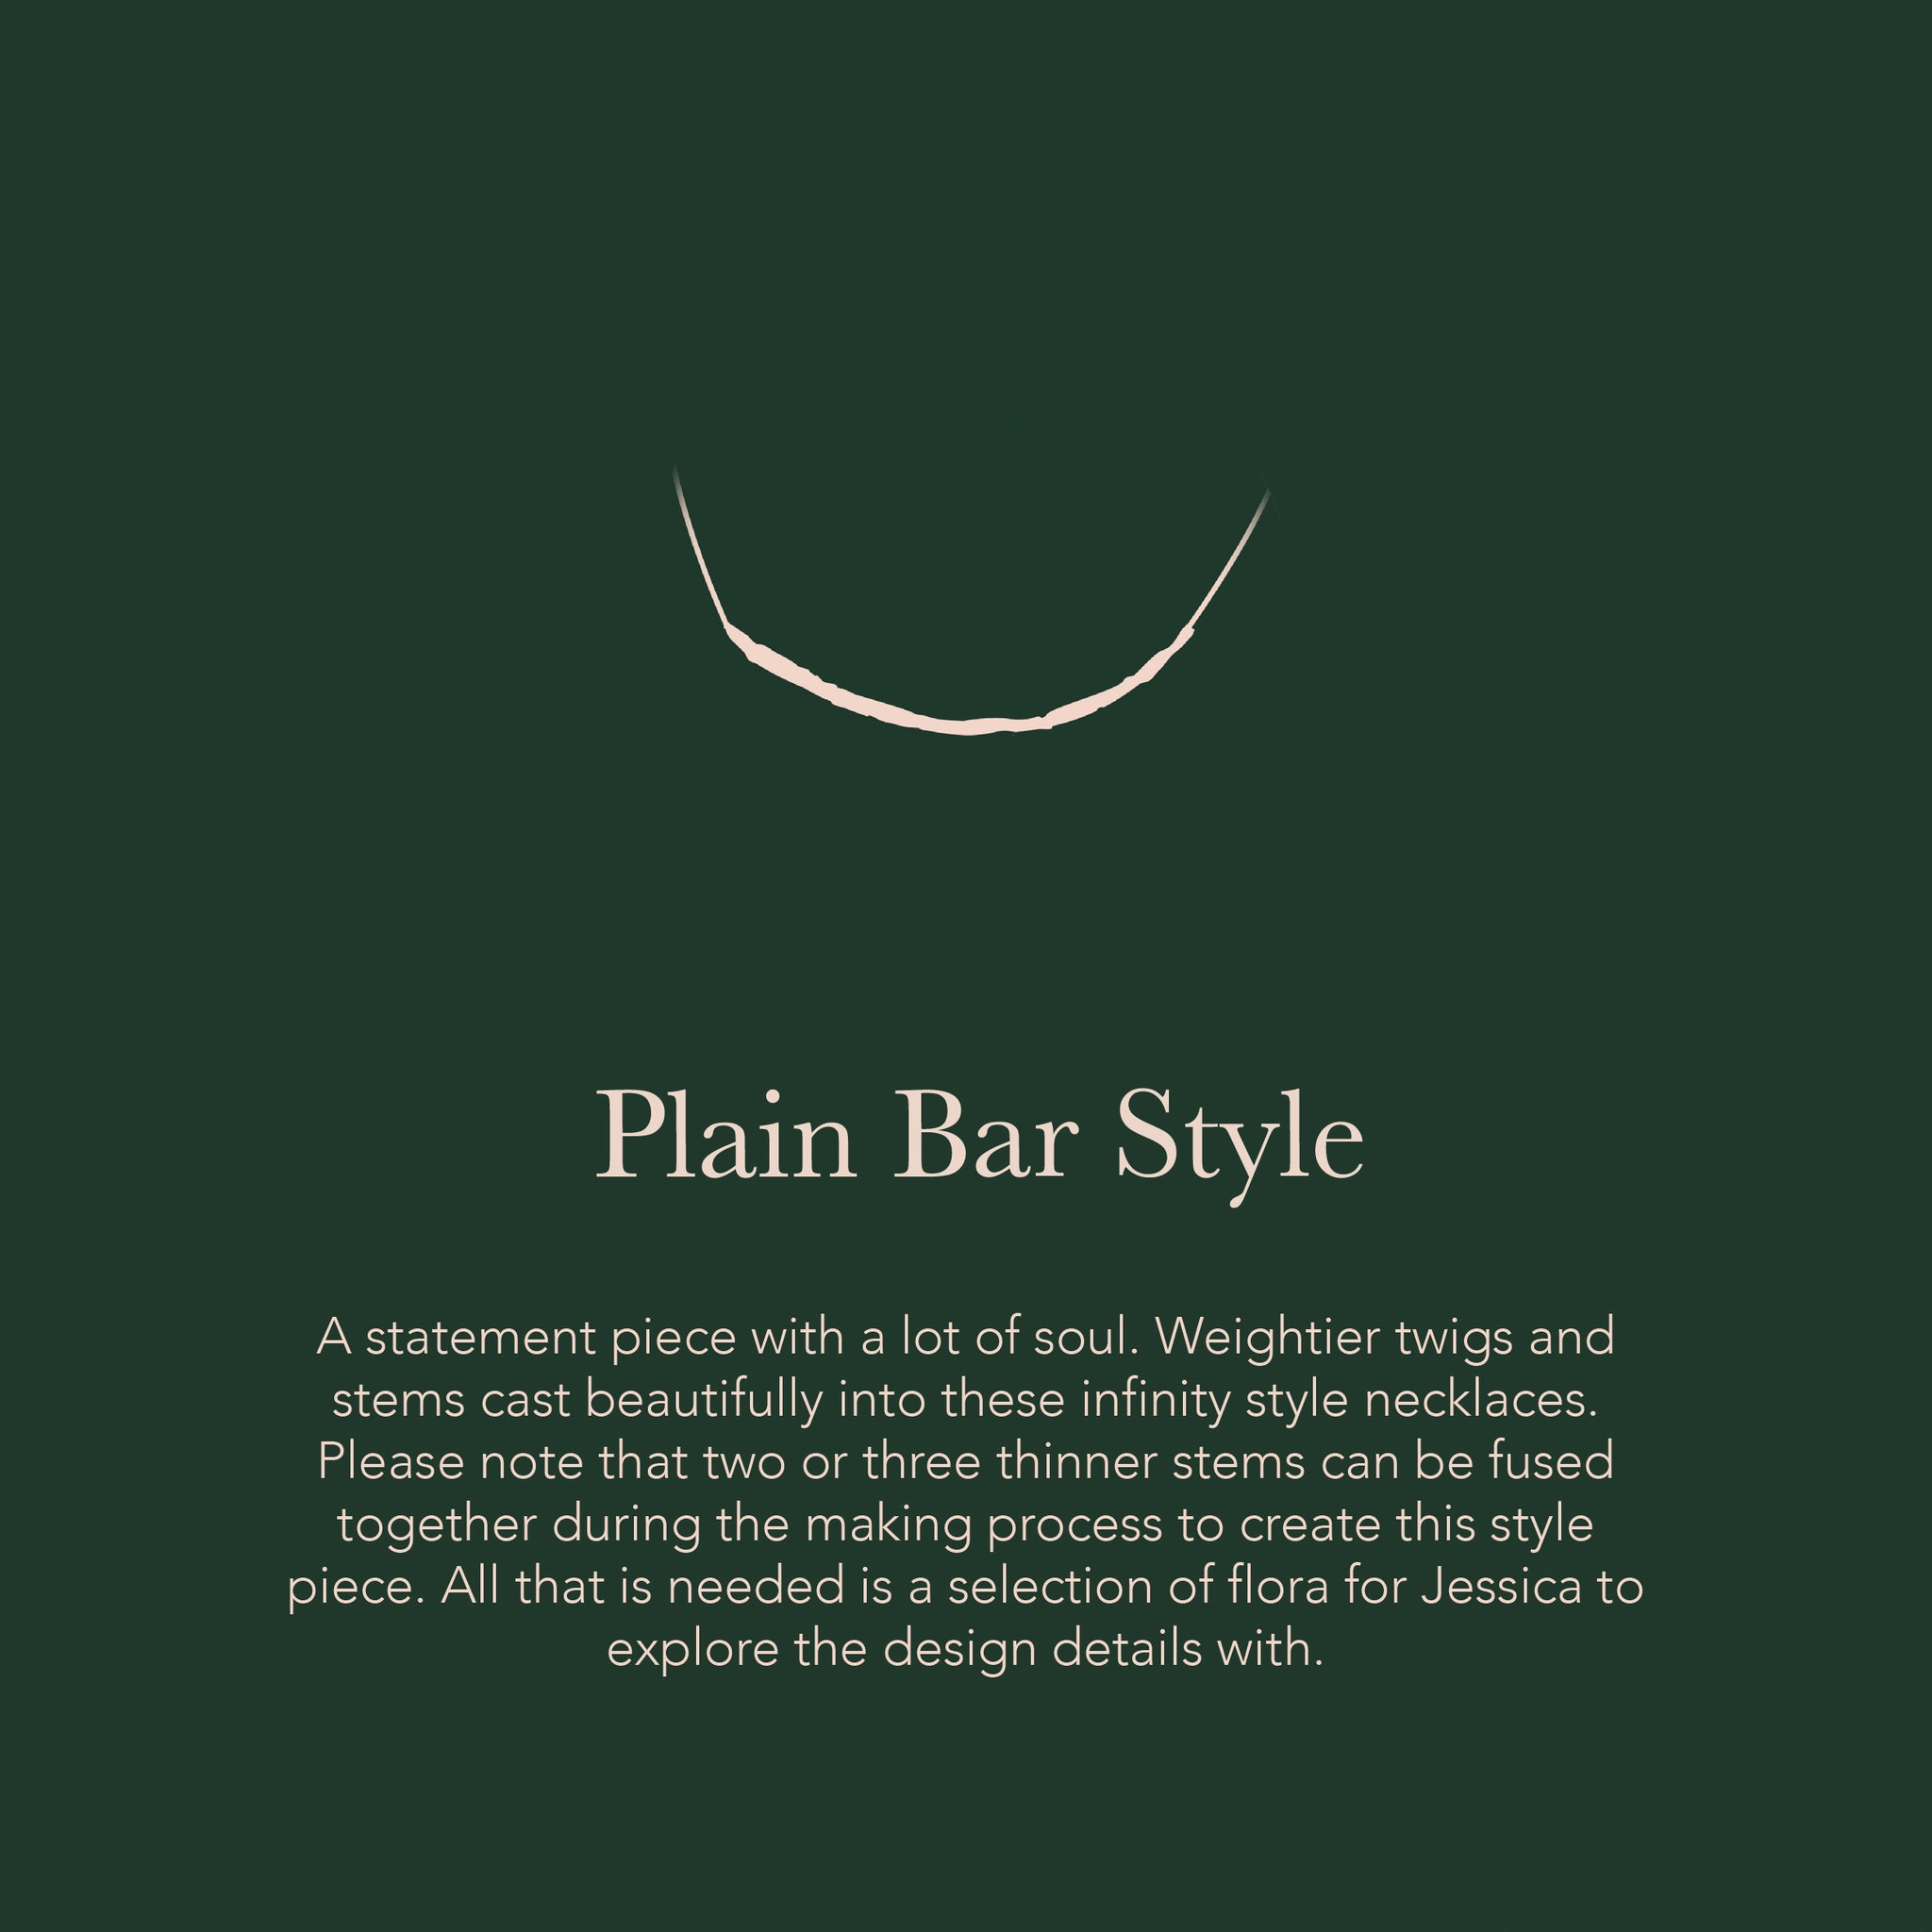 Plain Bar Style - Create